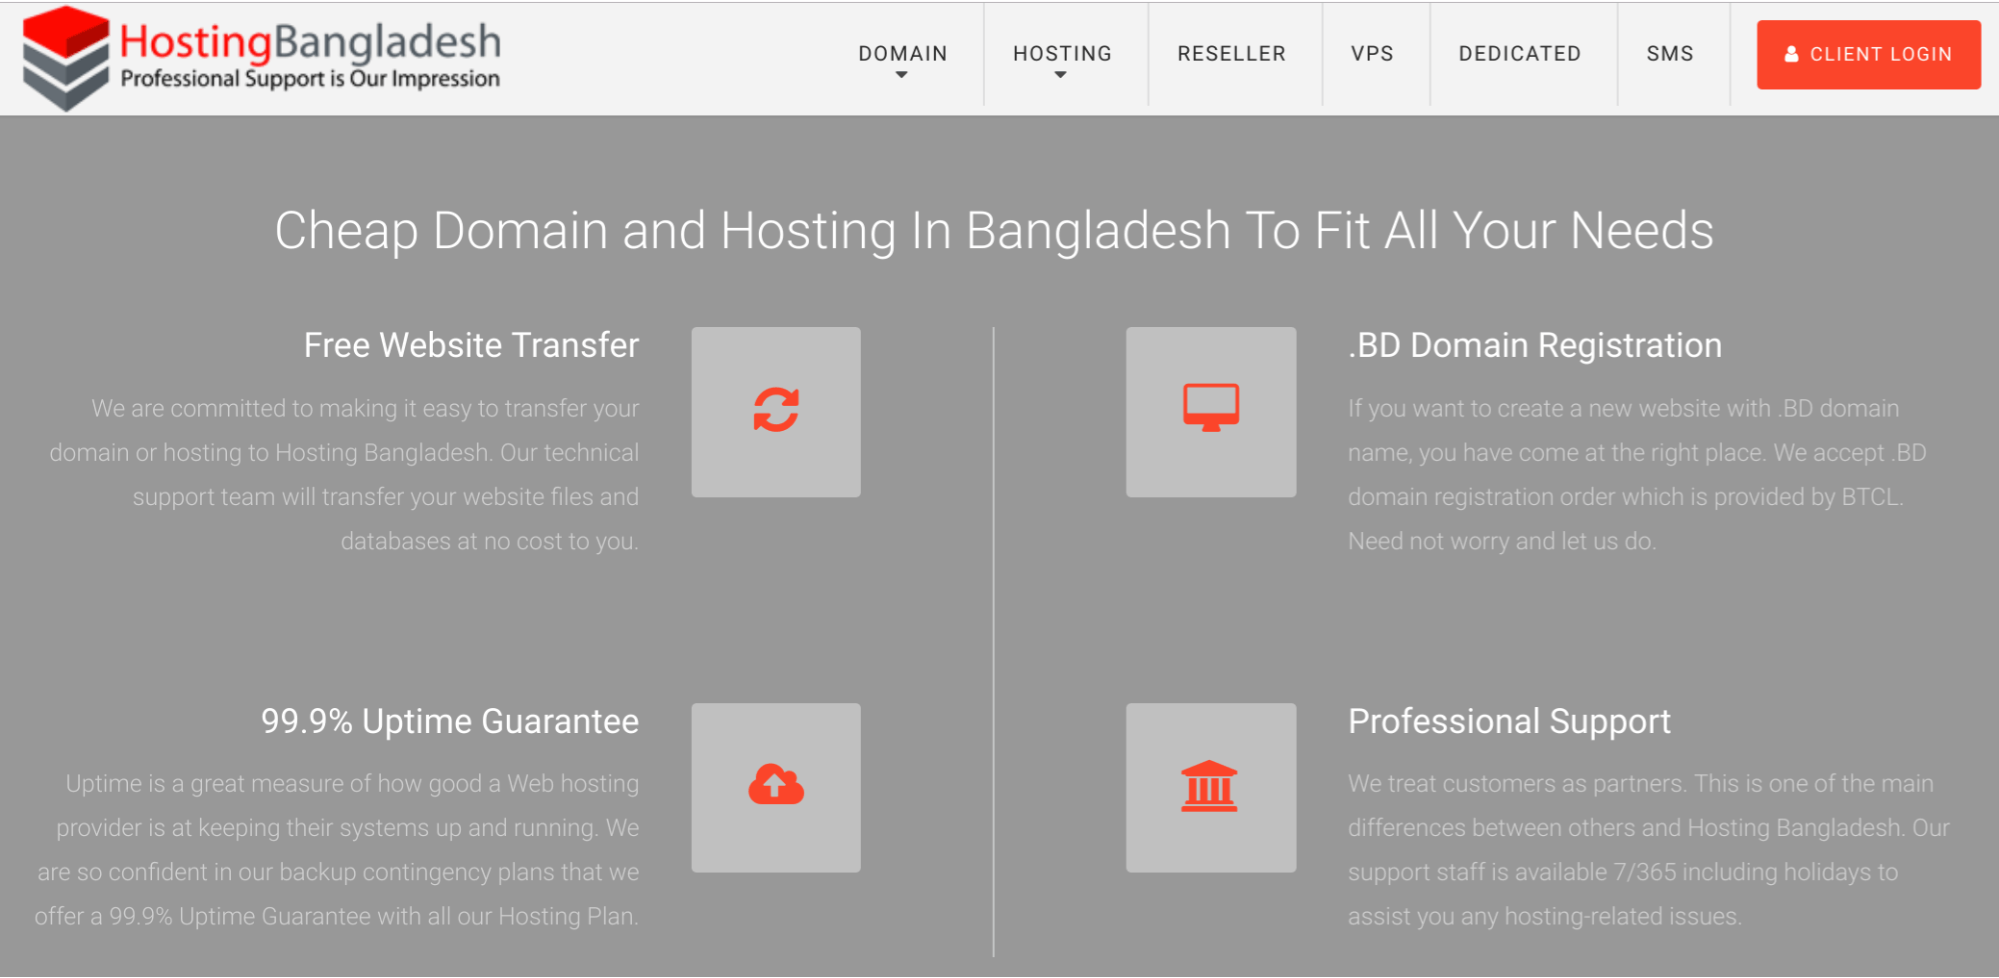 Hosting-Bangladesh-overview